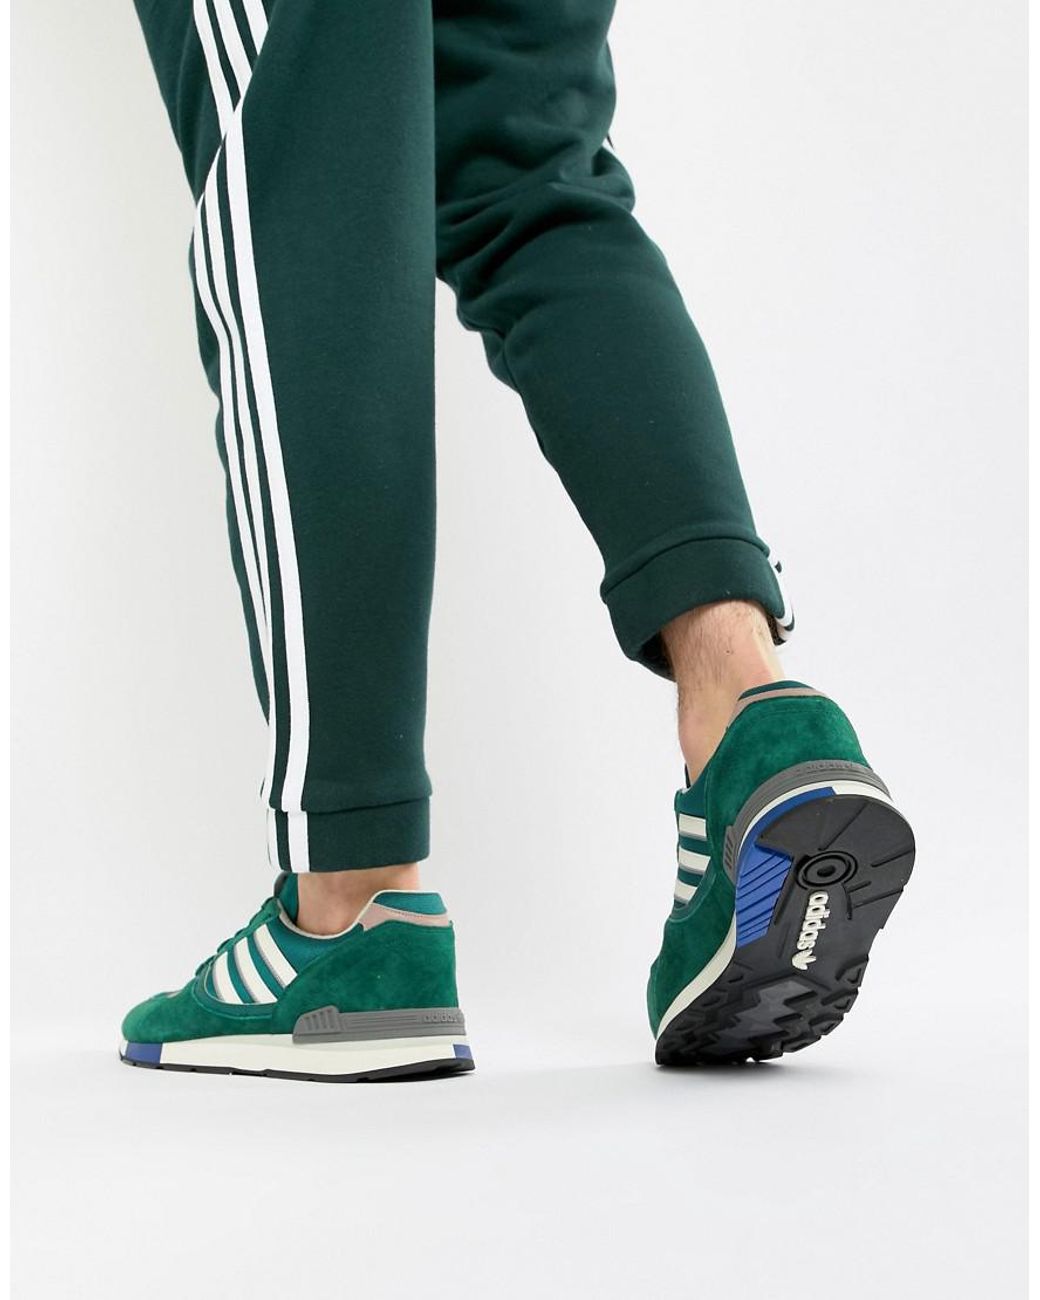 Зеленые кроссовки adidas. Adidas Originals кроссовки зеленые. Адидас ориджинал зеленые. Кроссовки адидас зеленые ориджинал. Кроссовки адидас Ориджиналс зеленые.